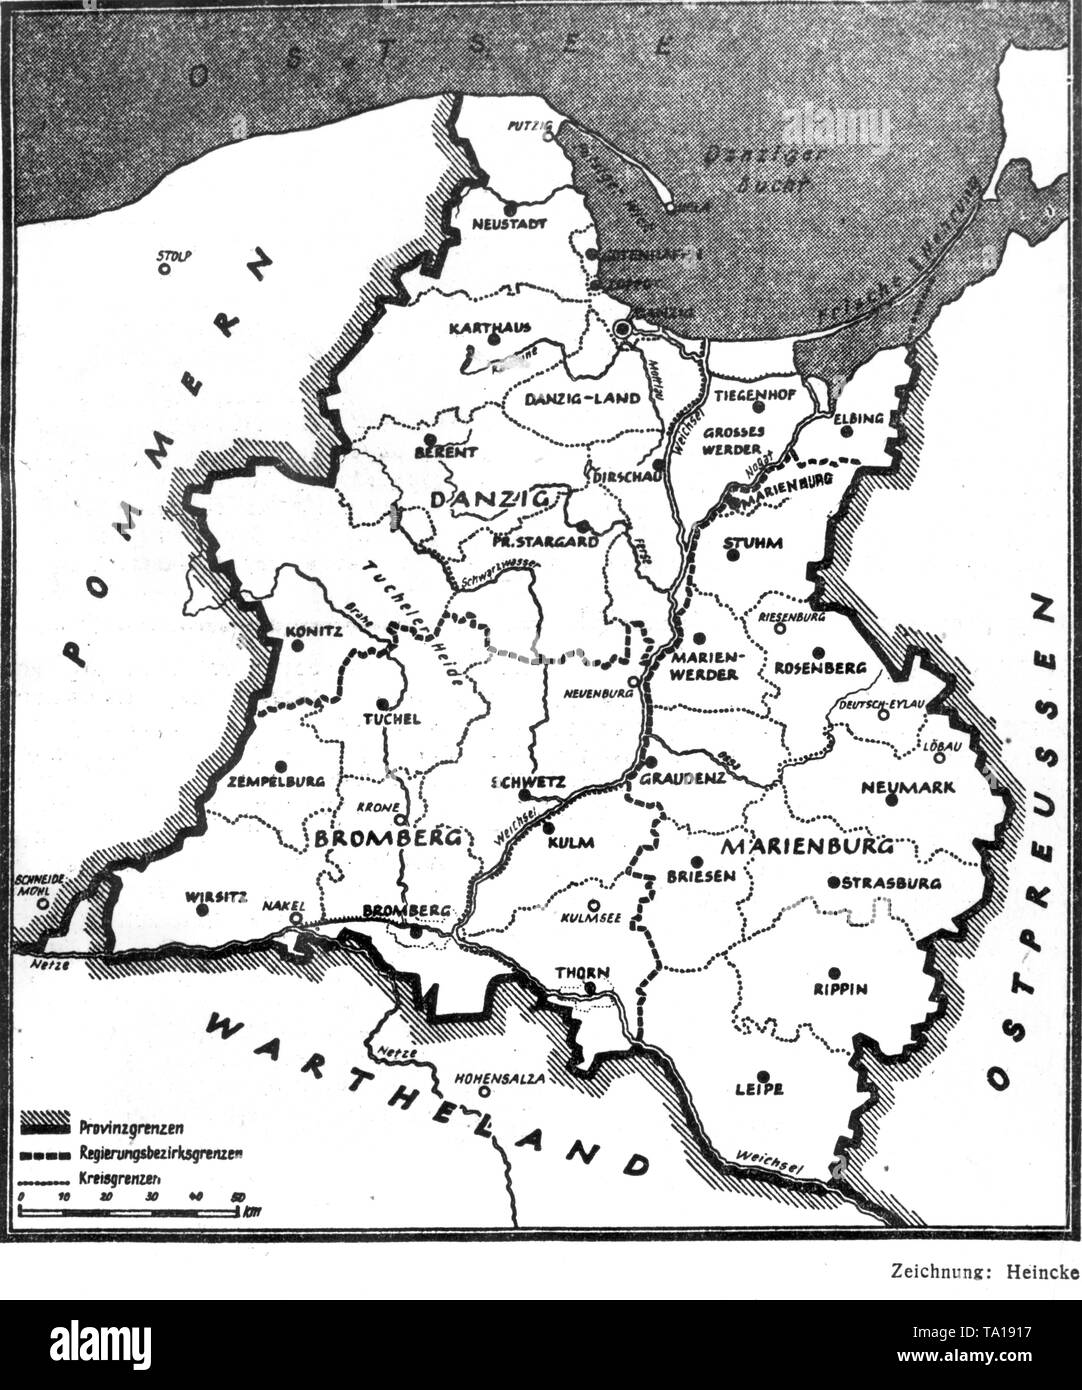 Karte der Reichsgau Gdansk-West Preußen, der illegal durch die Nationalsozialisten nach der Invasion von Polen annektiert wurde. Zeichnung von Heincke. Stockfoto